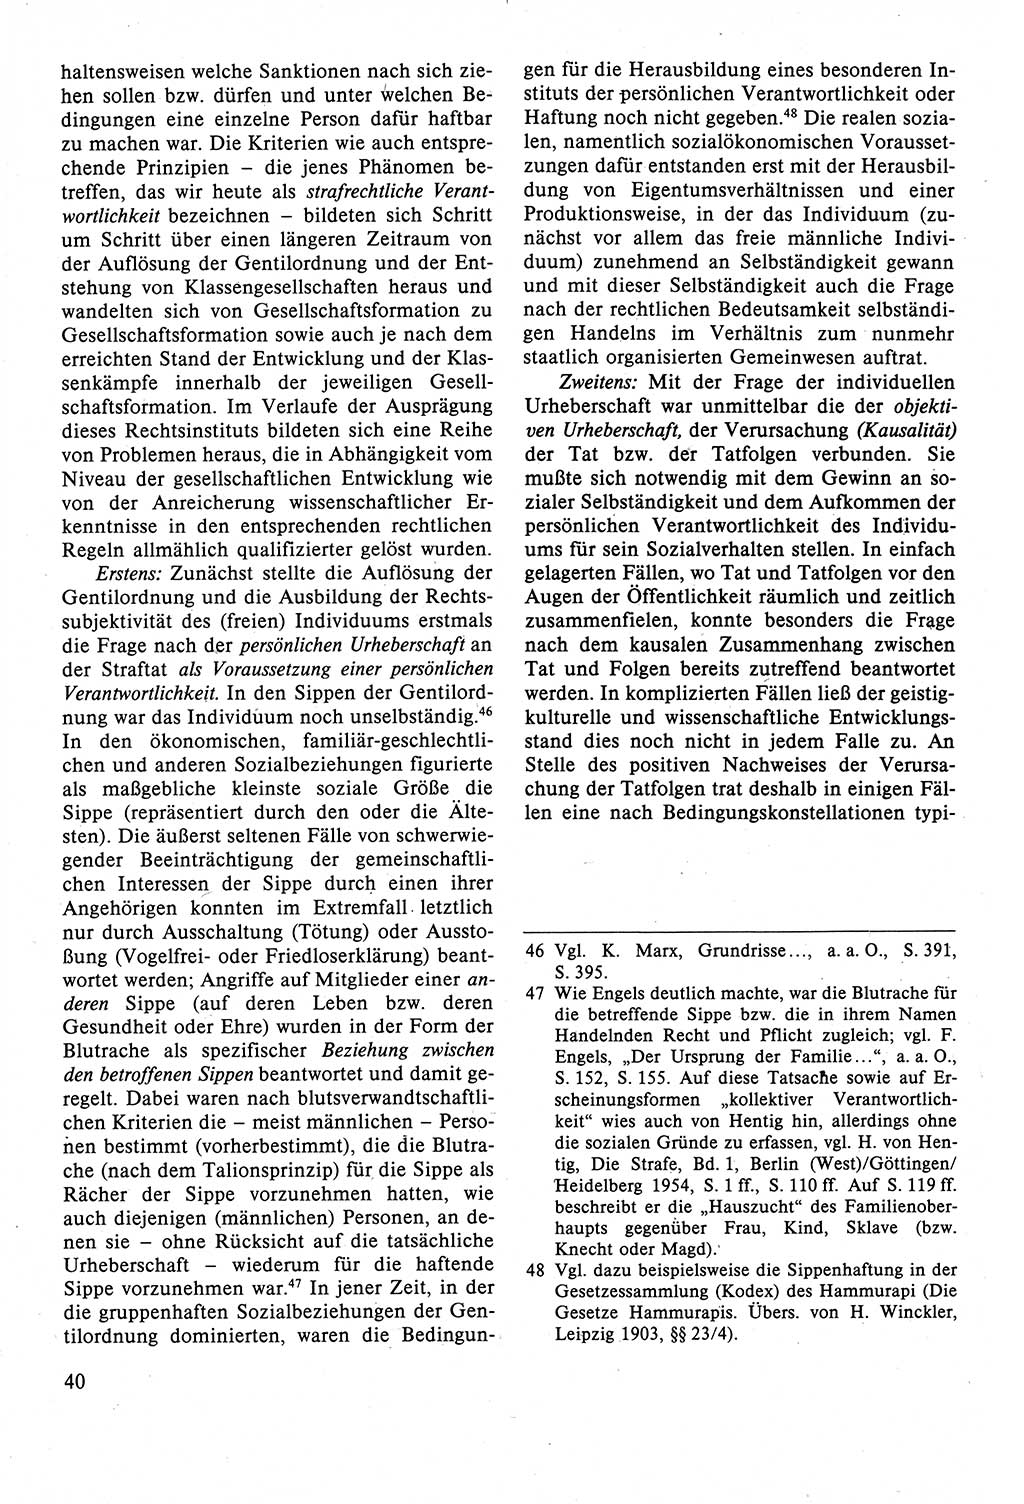 Strafrecht der DDR (Deutsche Demokratische Republik), Lehrbuch 1988, Seite 40 (Strafr. DDR Lb. 1988, S. 40)